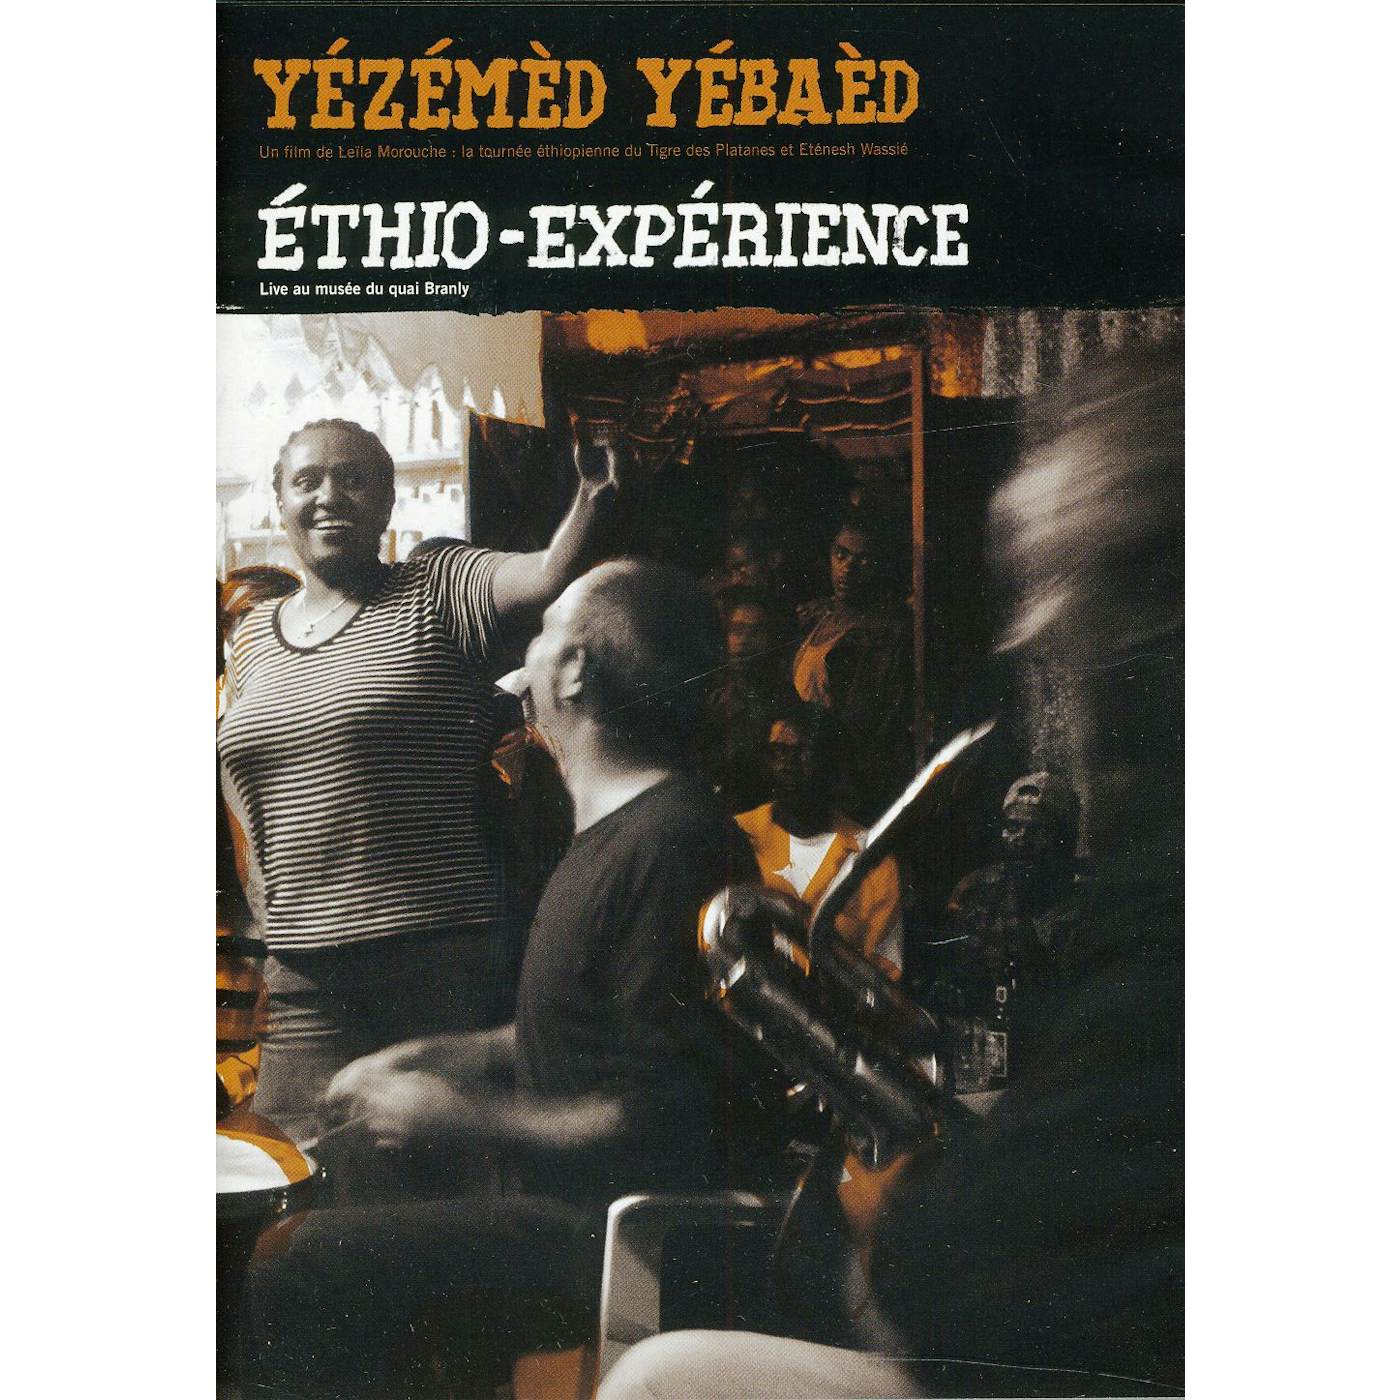 Le Tigre YEZEMED YEBAED: ETHIO-EXPERIENCE DVD